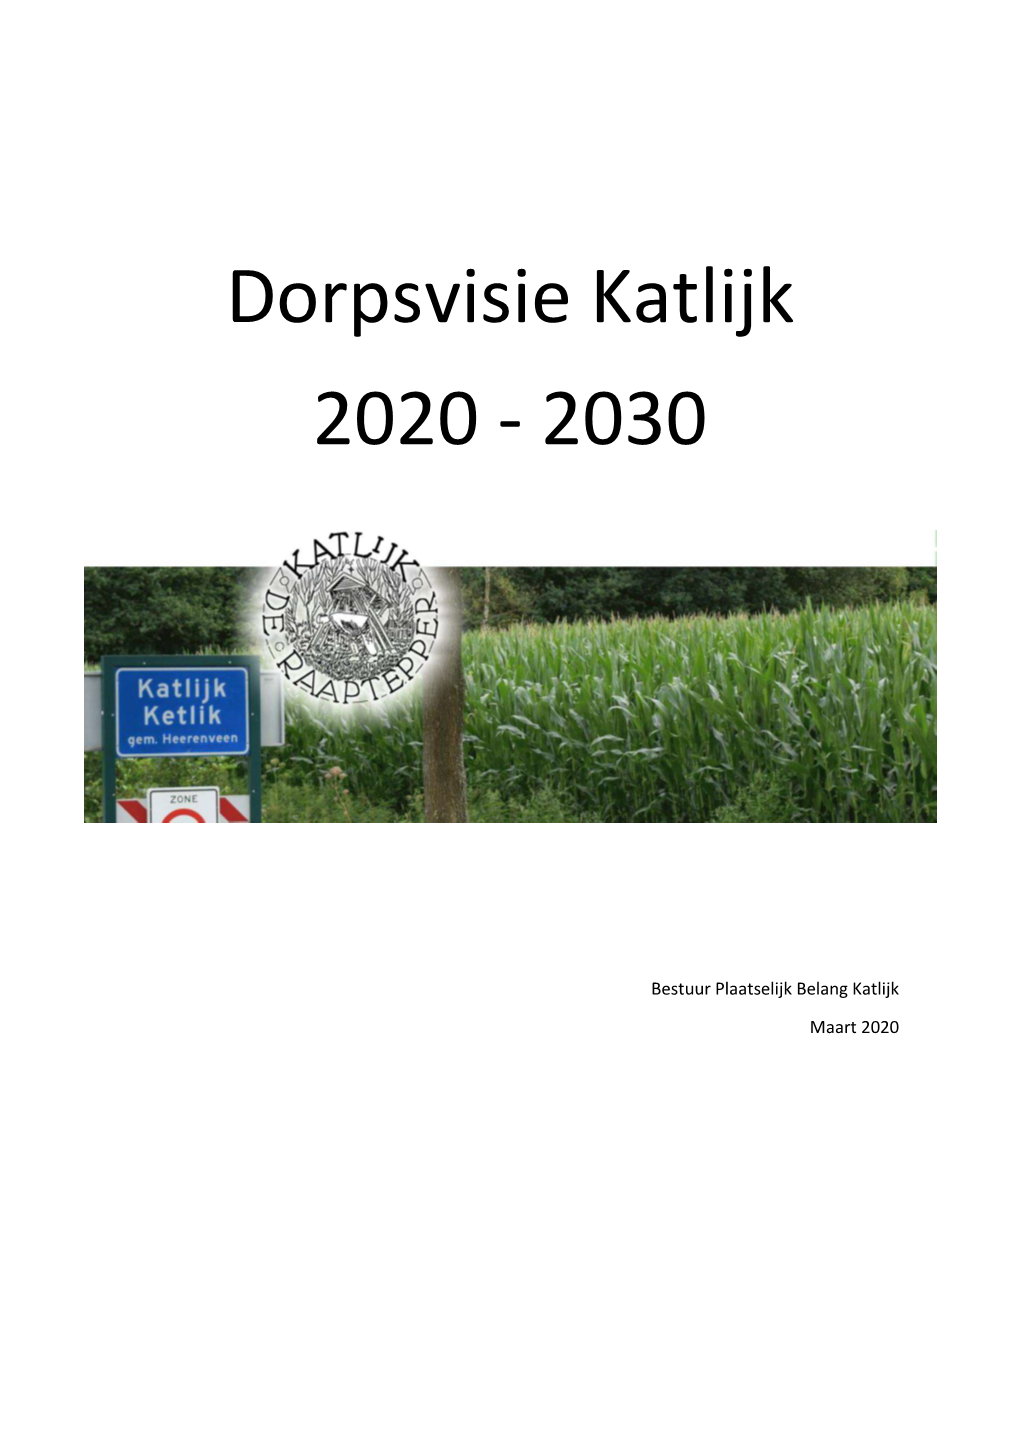 Dorpsvisie Katlijk 2020 - 2030